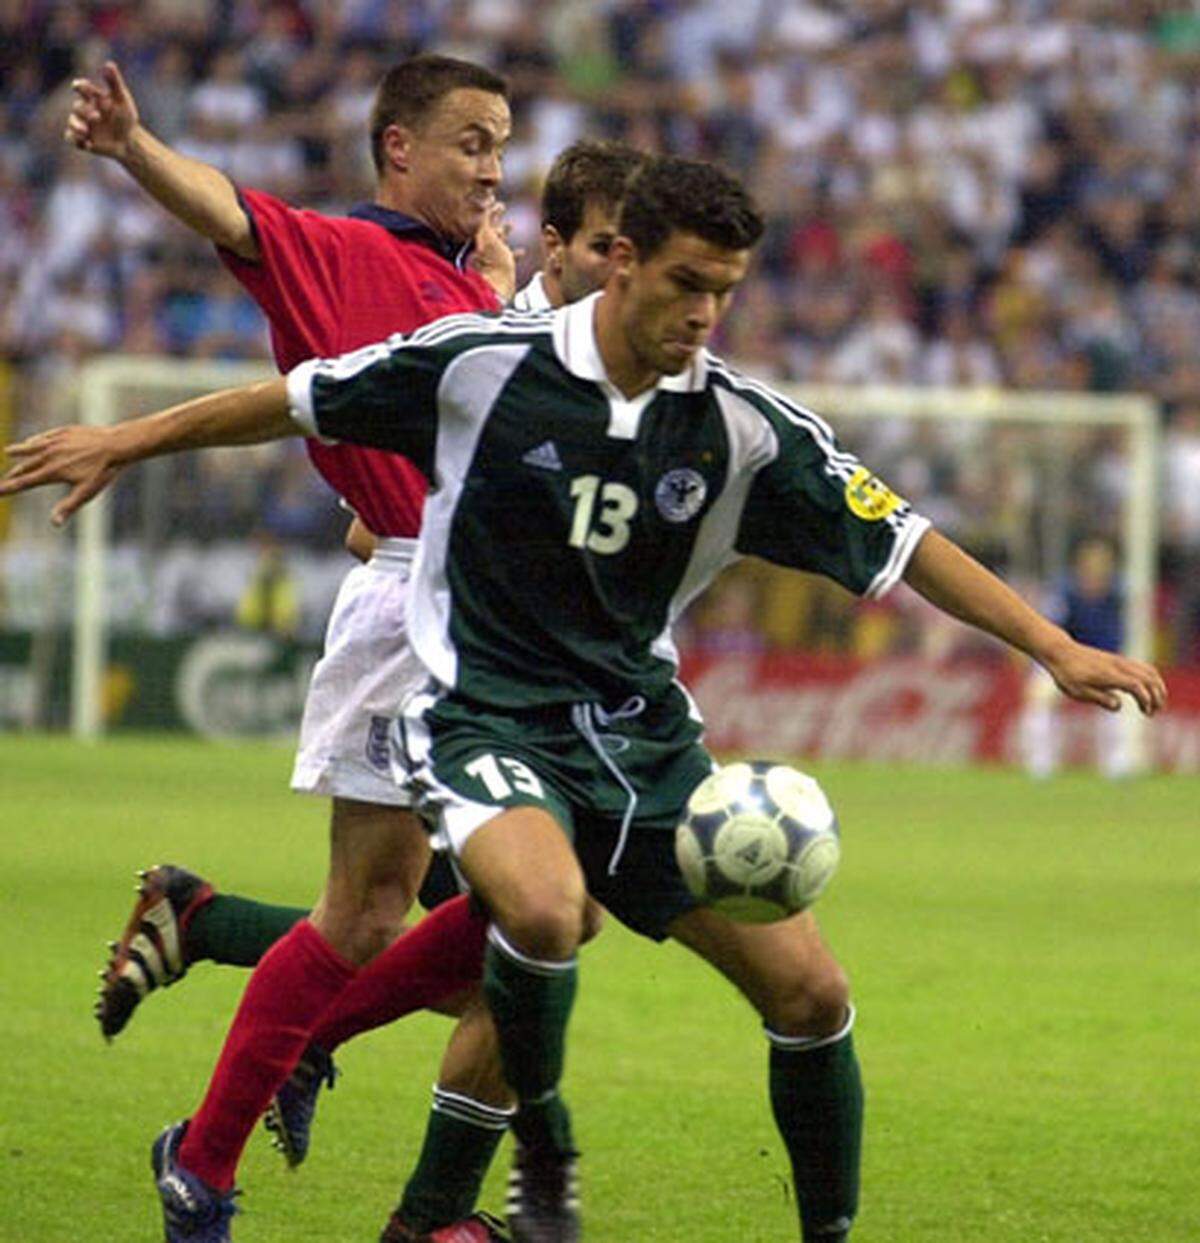 Im Alter von 23 Jahren erlebt Ballack ein Jahr nach seinem Länderspiel-Debüt eine bittere Turnier-Premiere: Deutschland scheidet bei der EM in Belgien und den Niederlanden blamabel nach der Vorrunde aus. Als Ergänzungsspieler kommt er beim 0:1 gegen England und dem 0:3 gegen Portugal insgesamt 63 Minuten zum Einsatz.